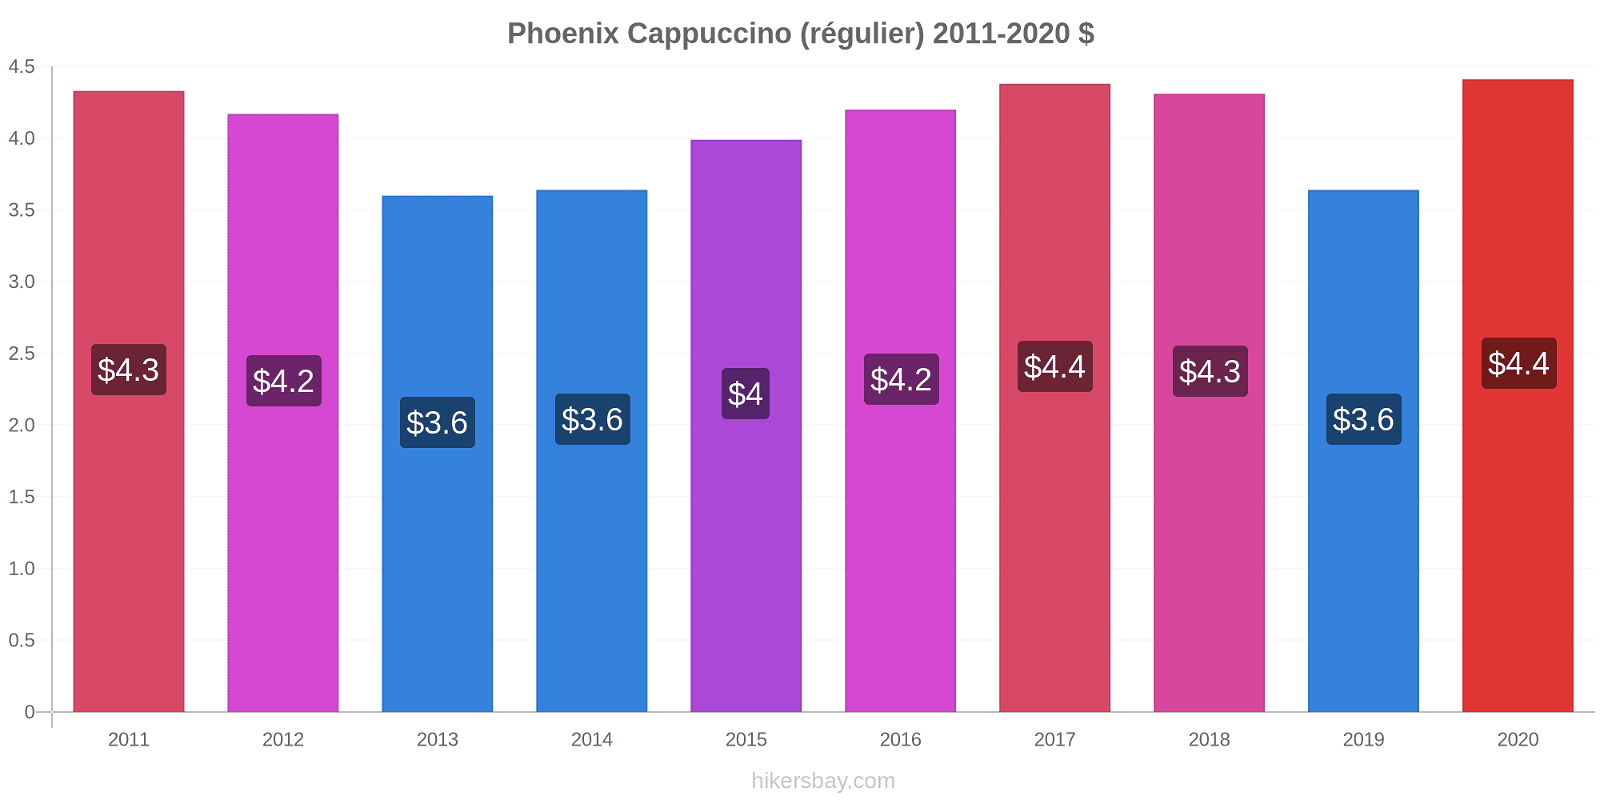 Phoenix changements de prix Cappuccino (régulier) hikersbay.com